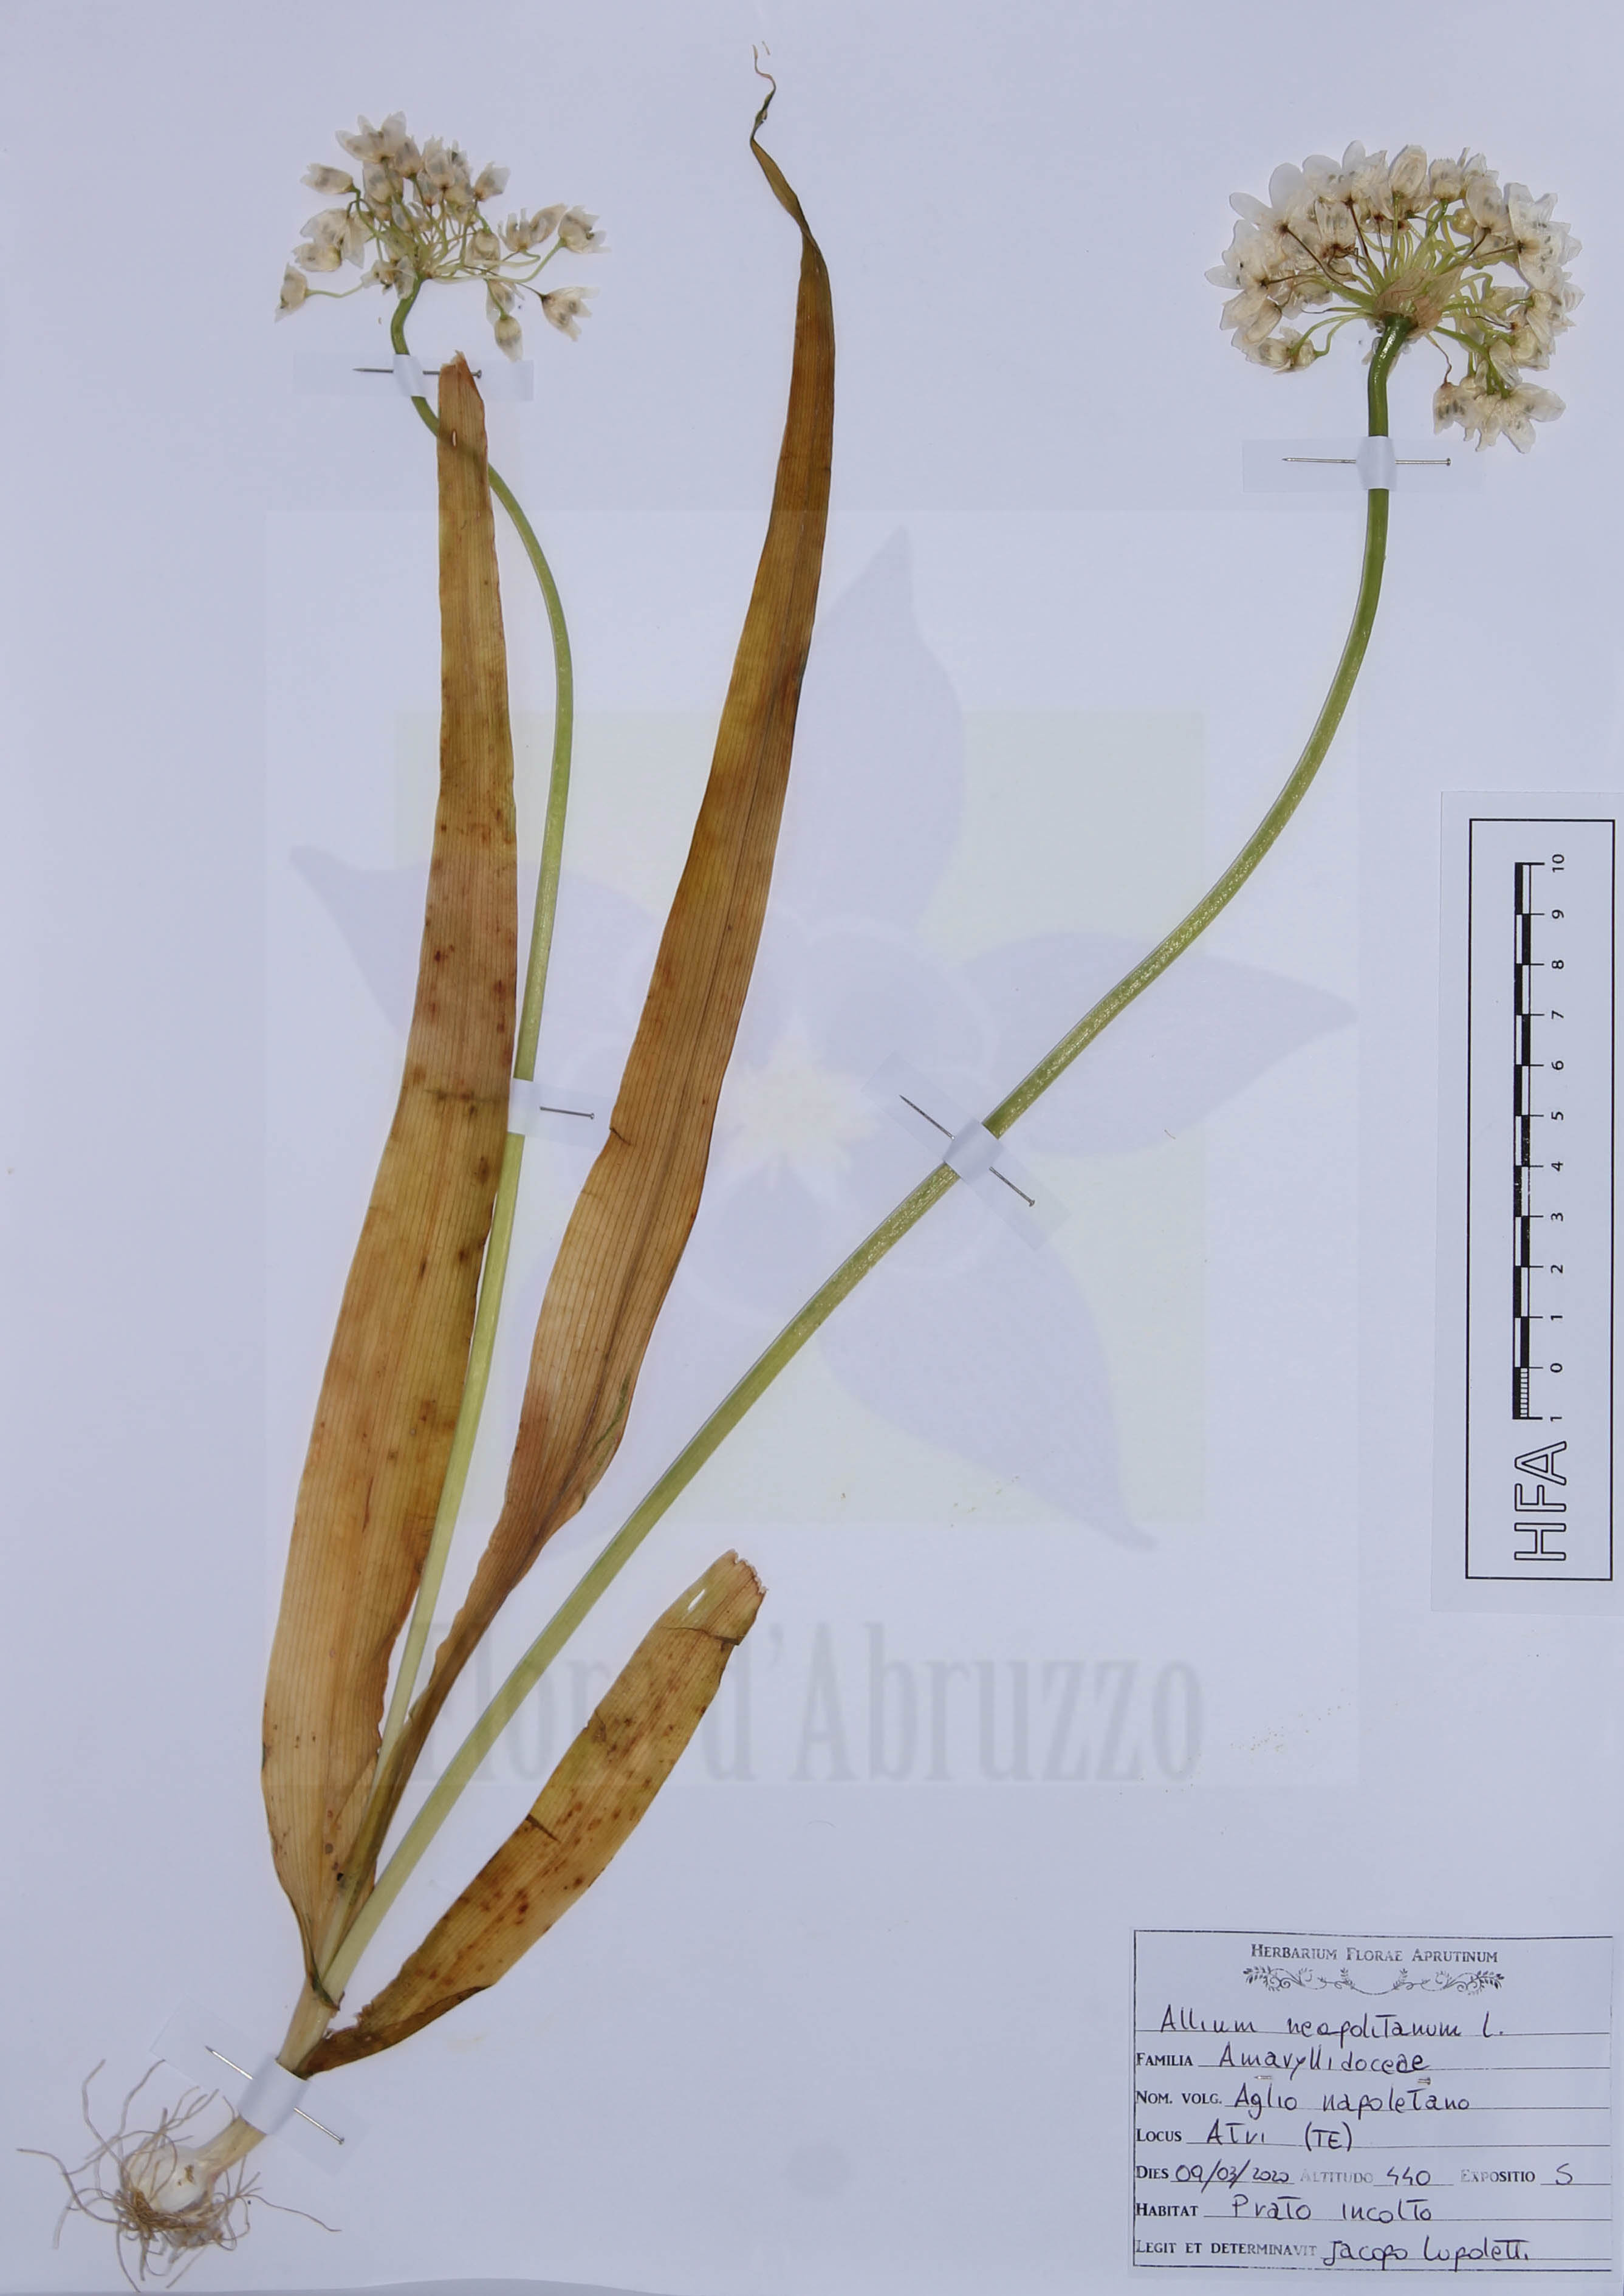 Allium neapolitanum L.